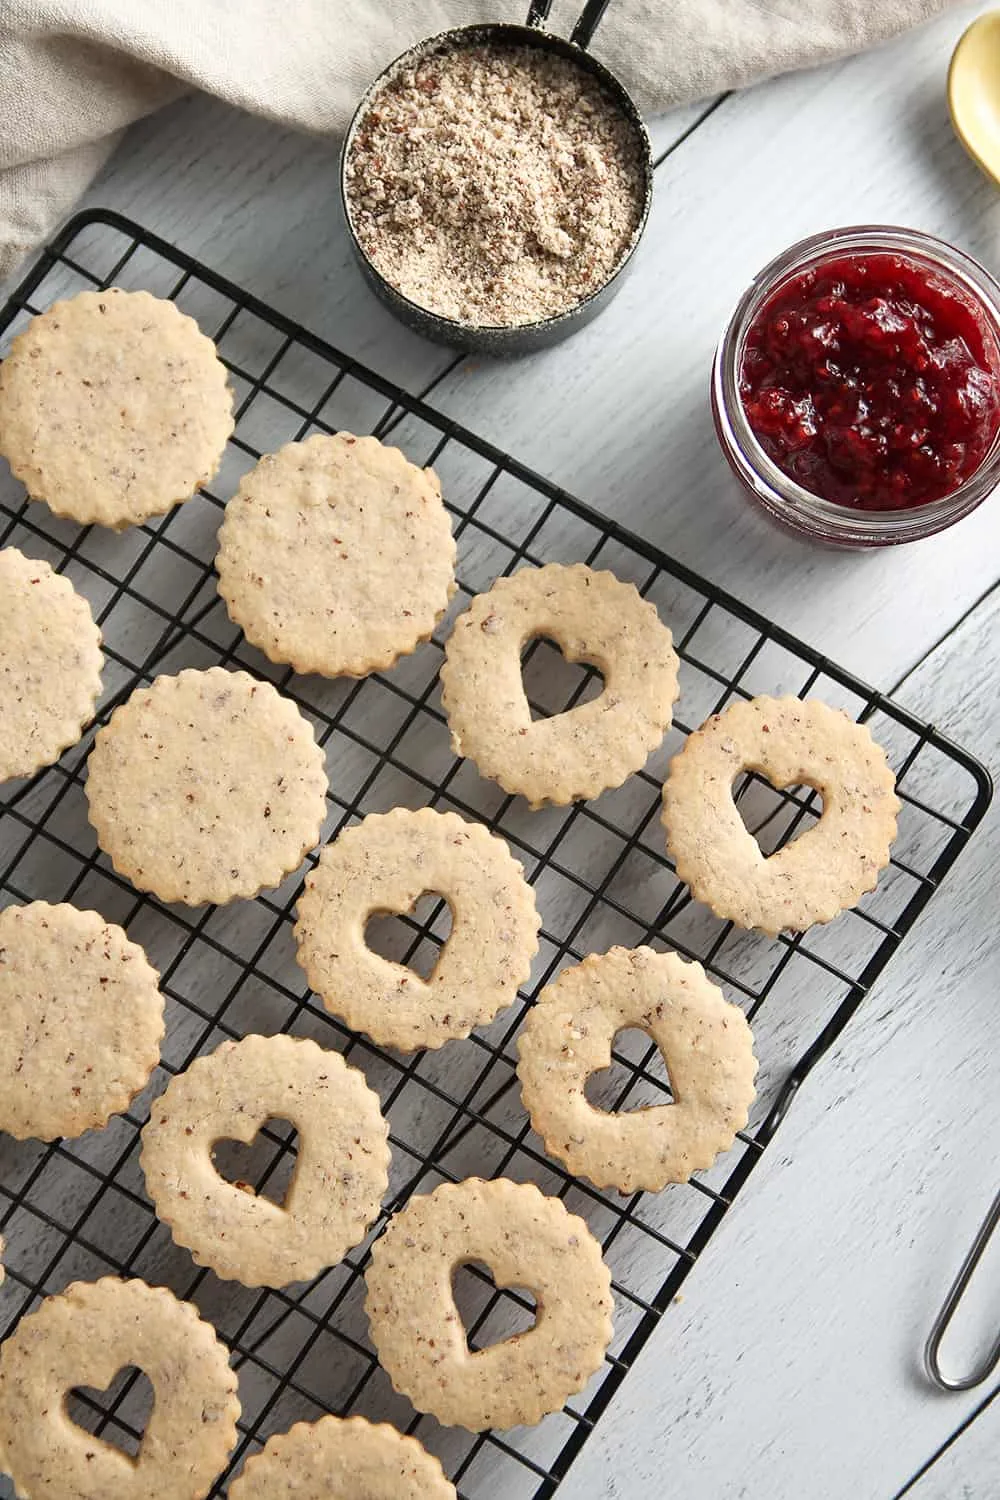 Raspberry Linzer Cookies sandwich raspberry jam between two almond cookies. 